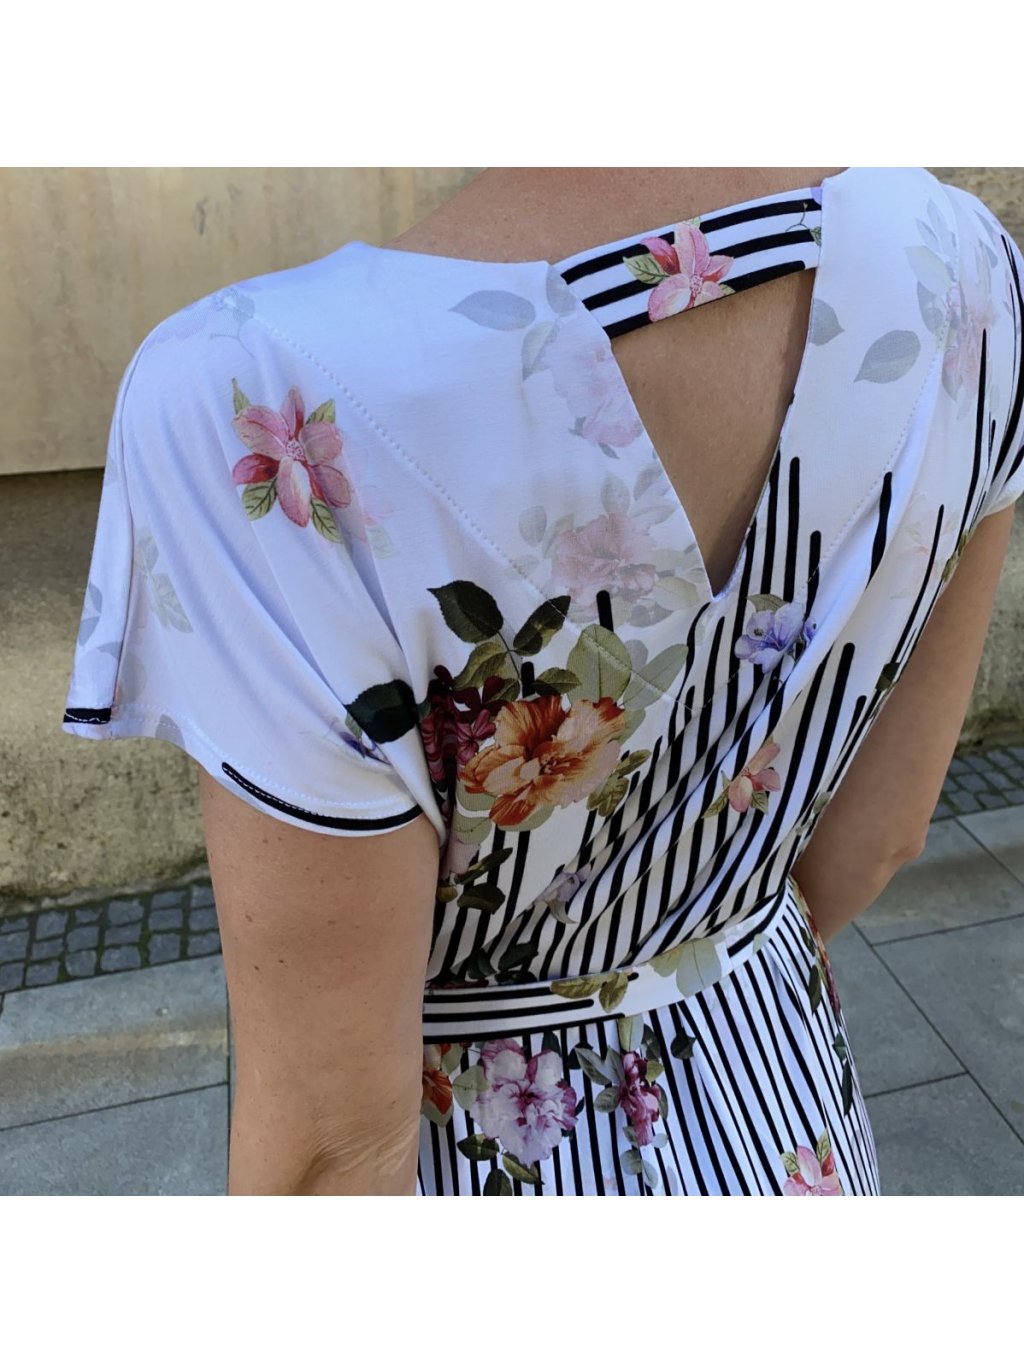 Šaty Top Bis bílé s grafikou a květy